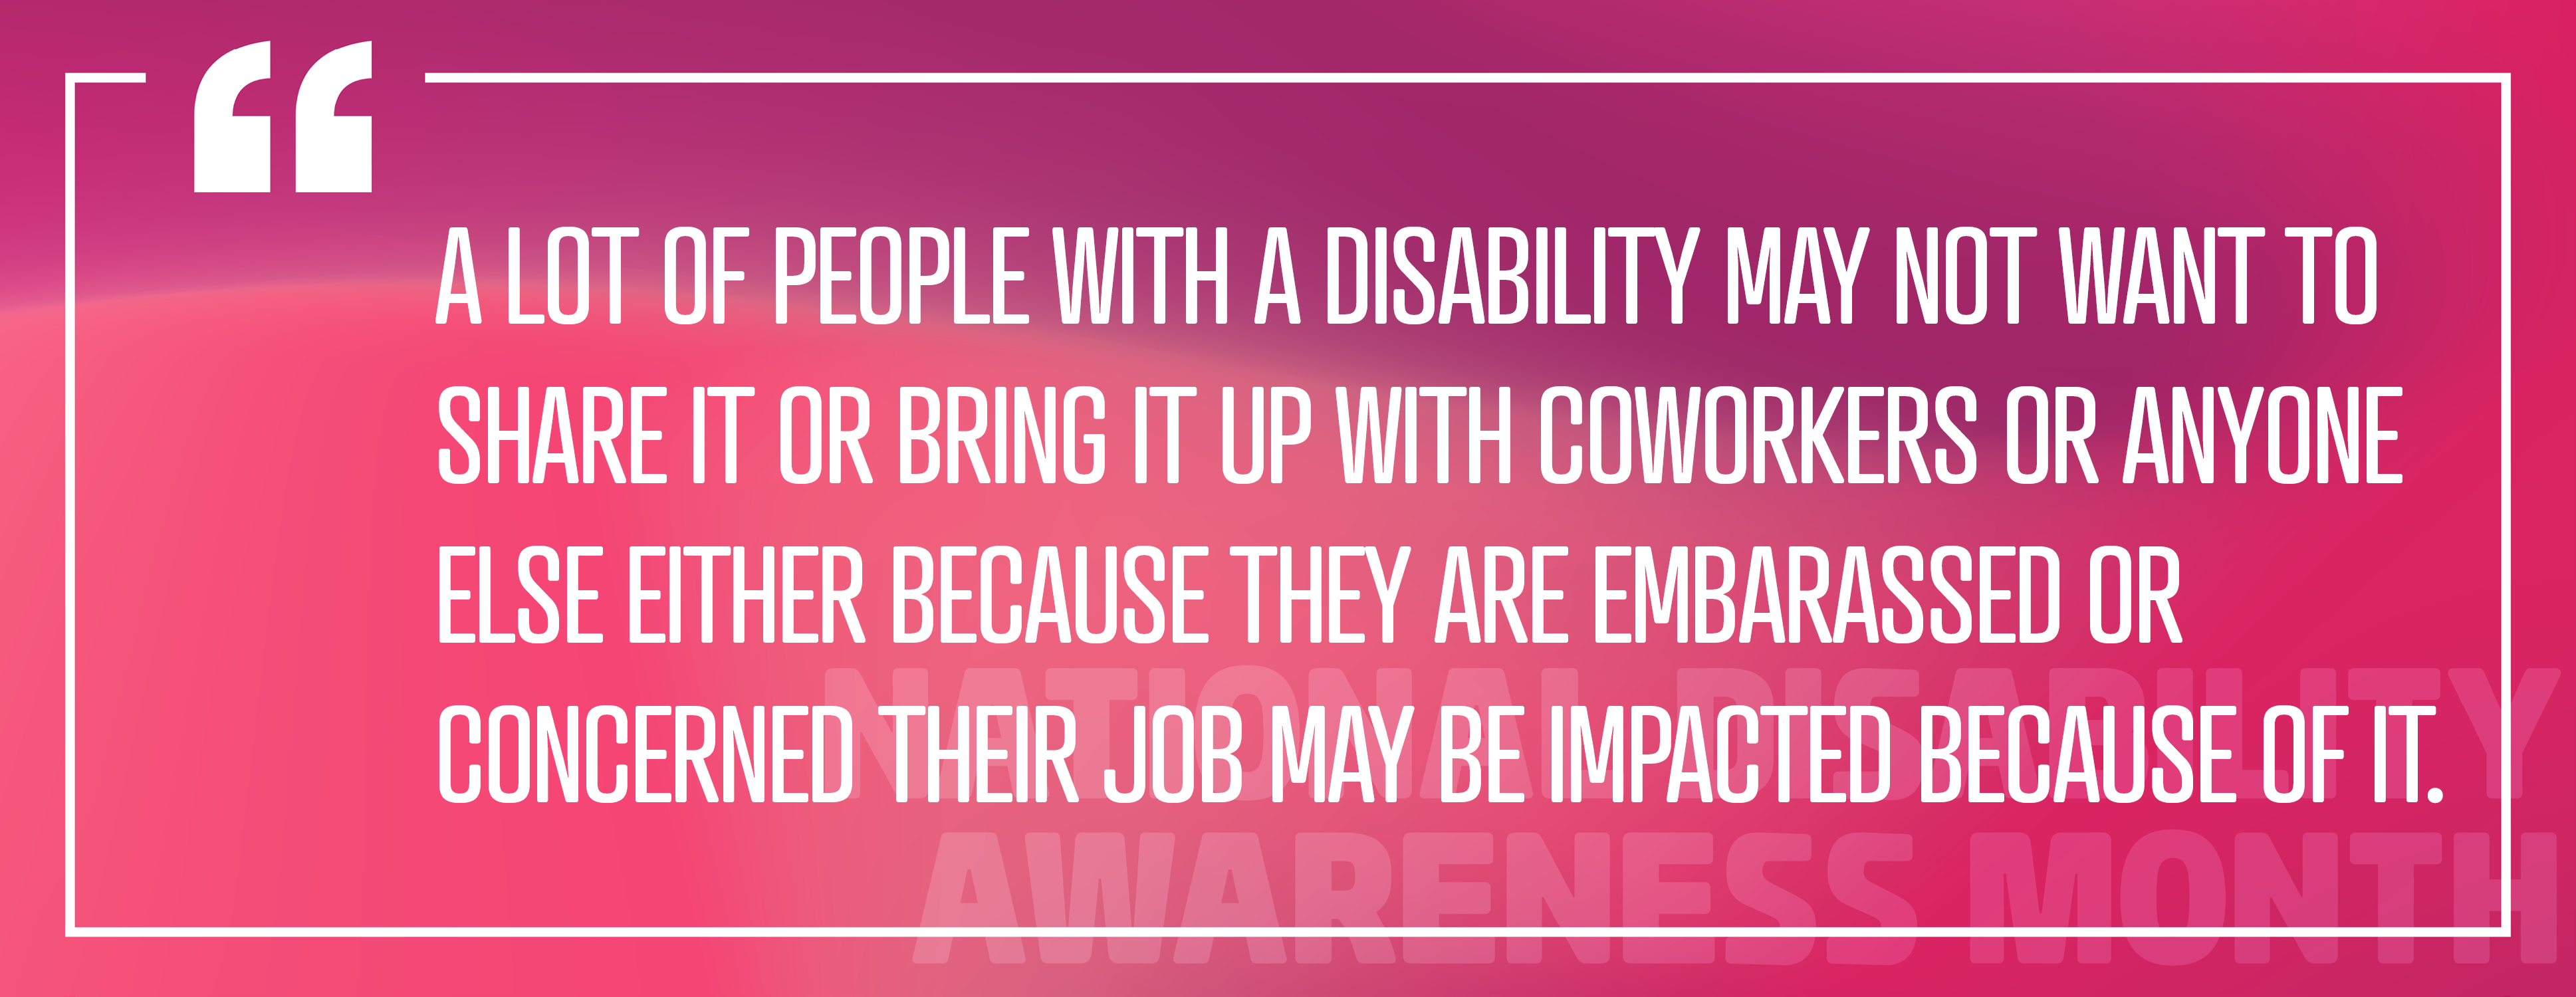 الصورة 3: توظيف الأفراد ذوي الإعاقة